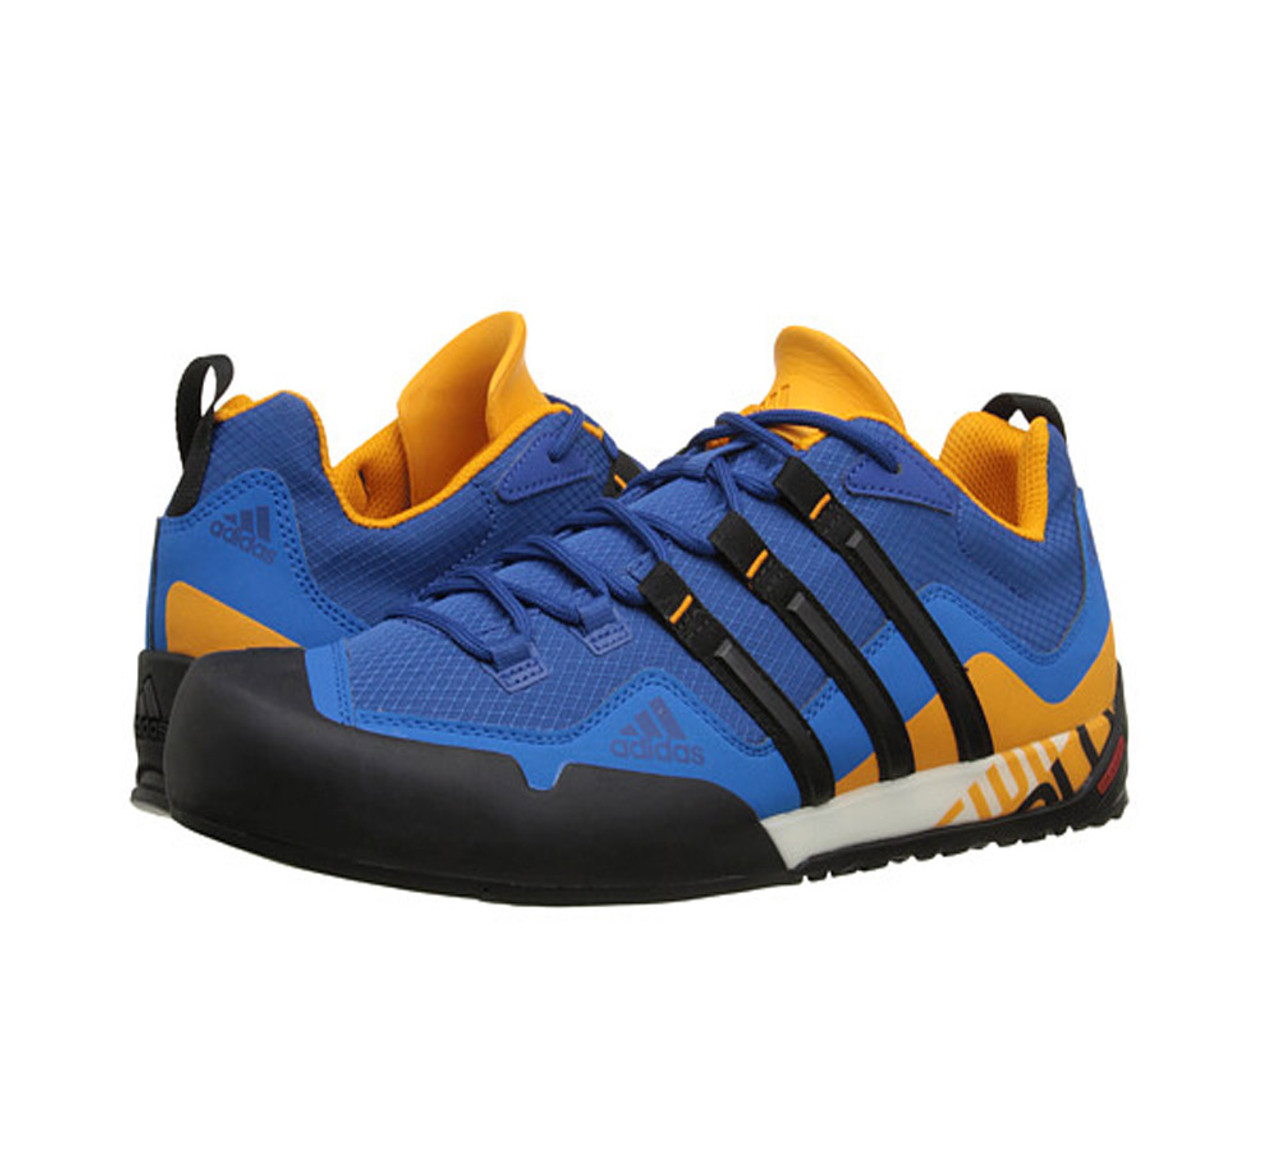 Pareja testigo Diplomacia Adidas Men's Terrex Swift Solo Hiking Shoe - Blue | Discount Adidas Men's  Athletic Shoes & More - Shoolu.com | Shoolu.com